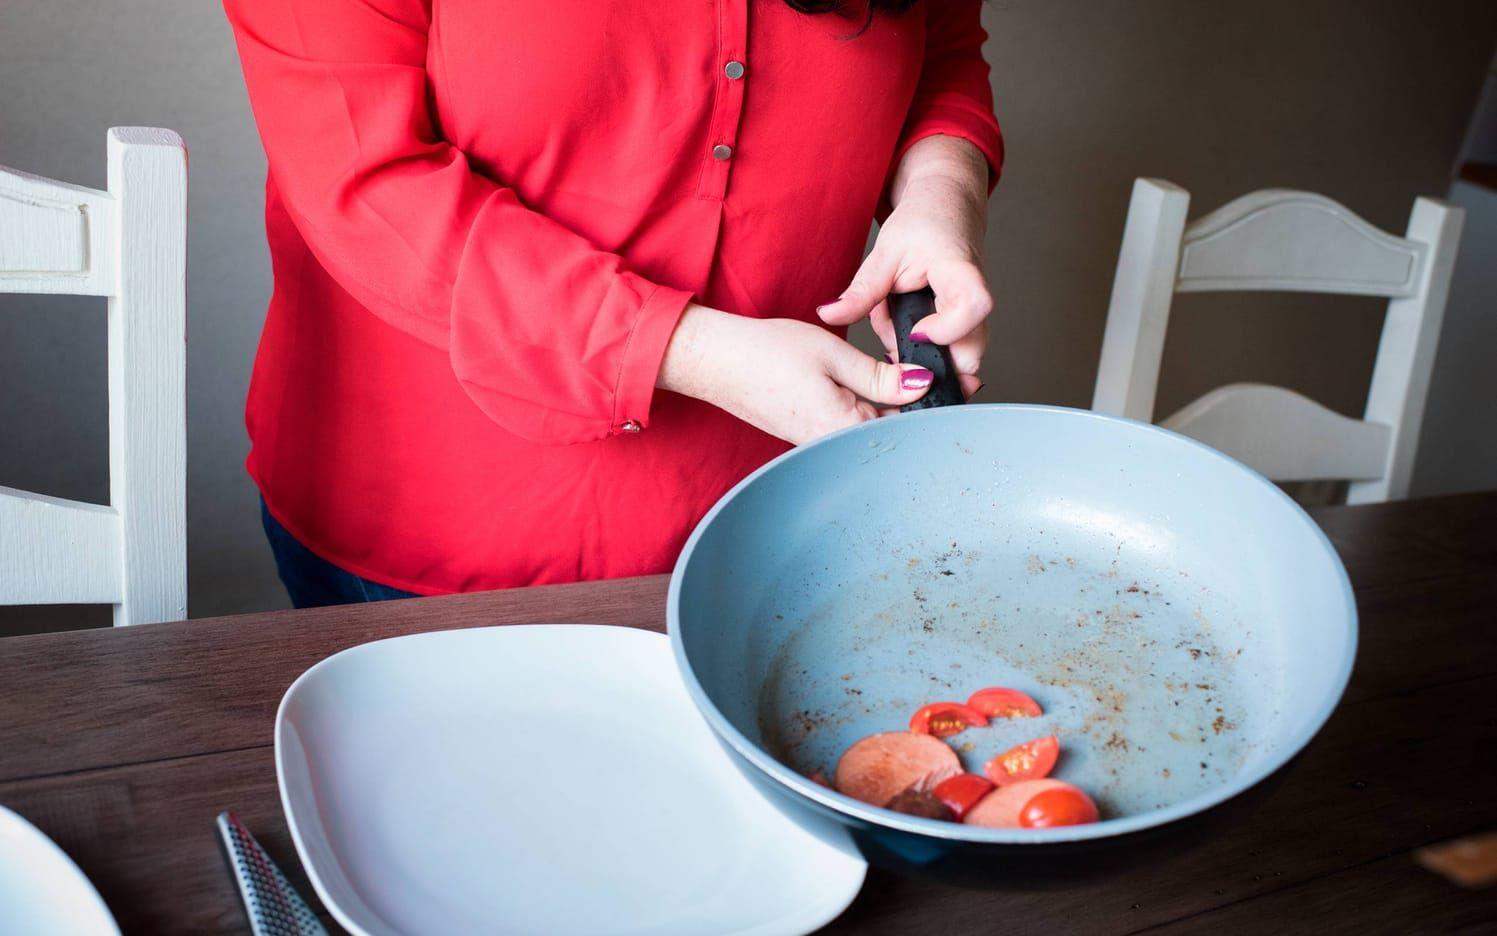 Med skadad tumme och pekfinger har Camilla Benon i norra Halland svårt med vissa vardagliga sysslor, exempelvis i köket. Bild: Jonatan Bylars